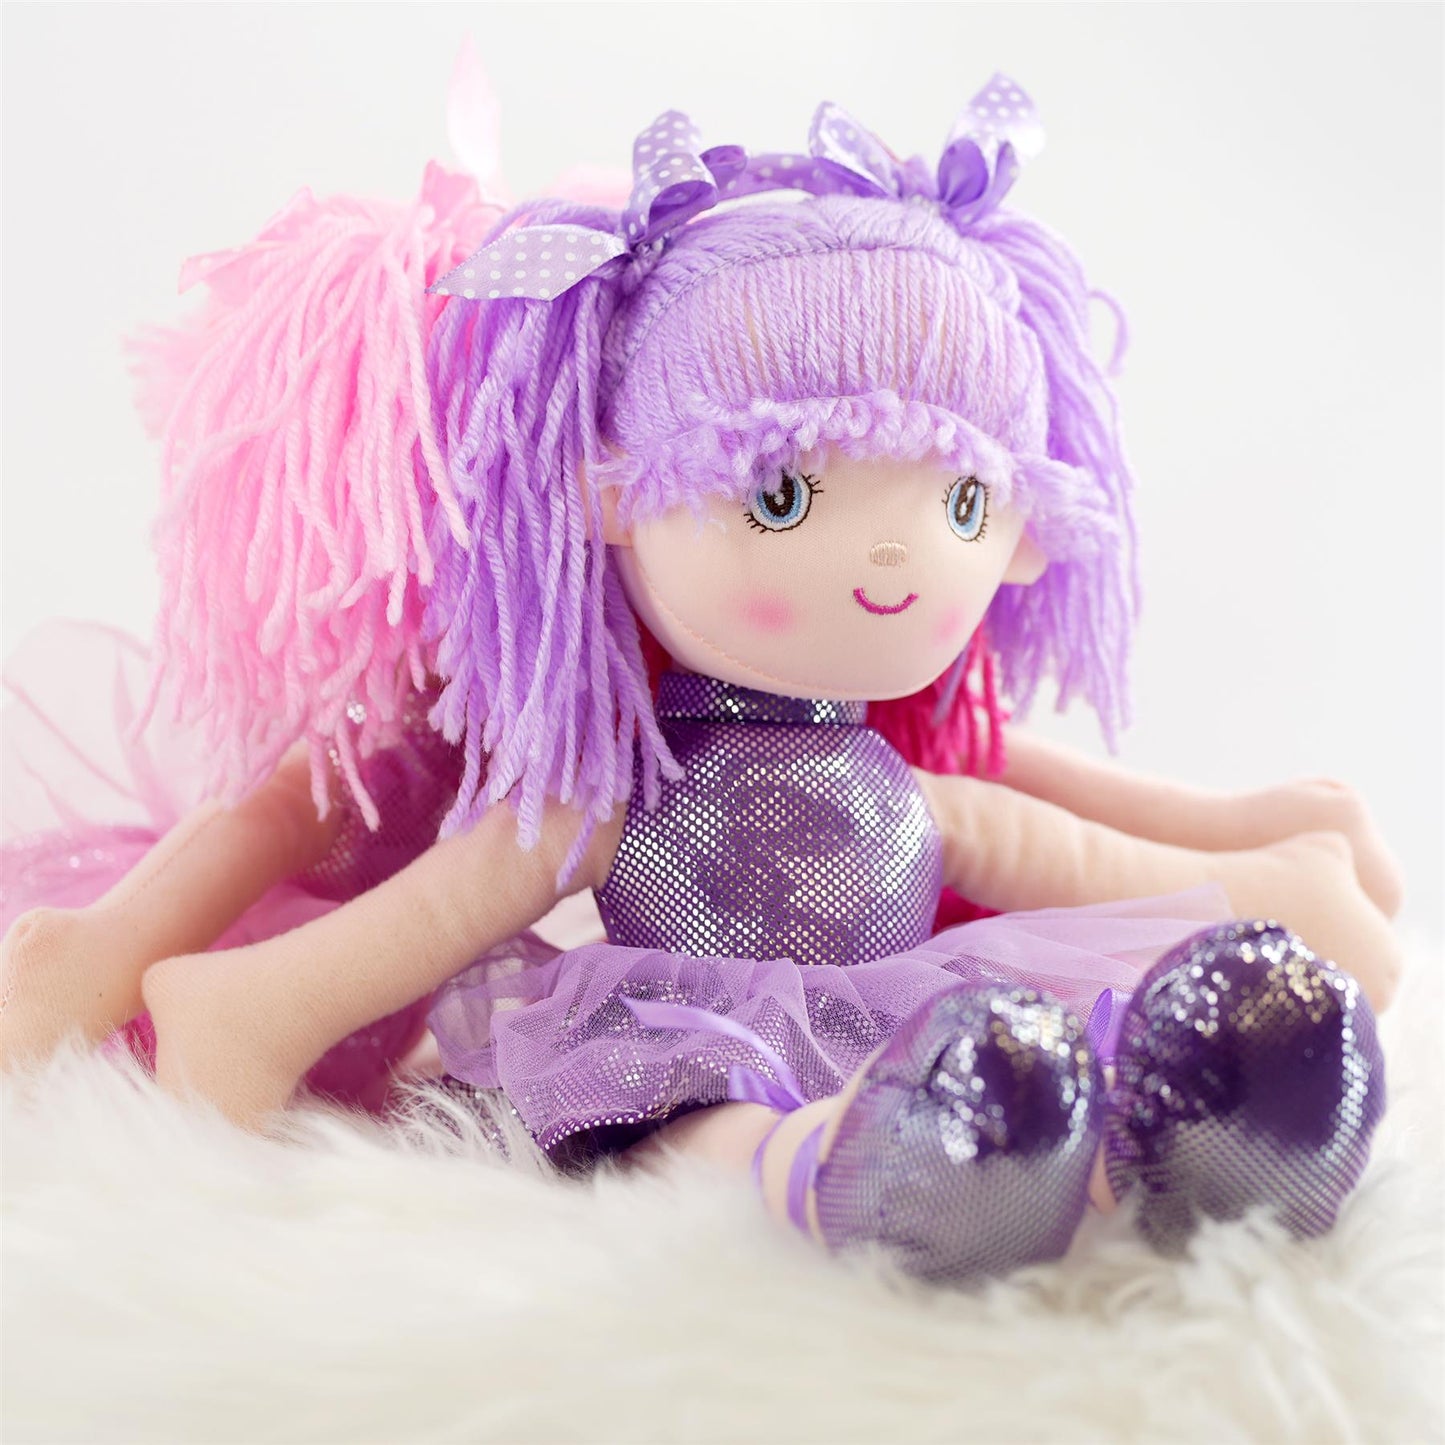 Ballerina Rag Doll 16" by BiBi Doll - UKBuyZone